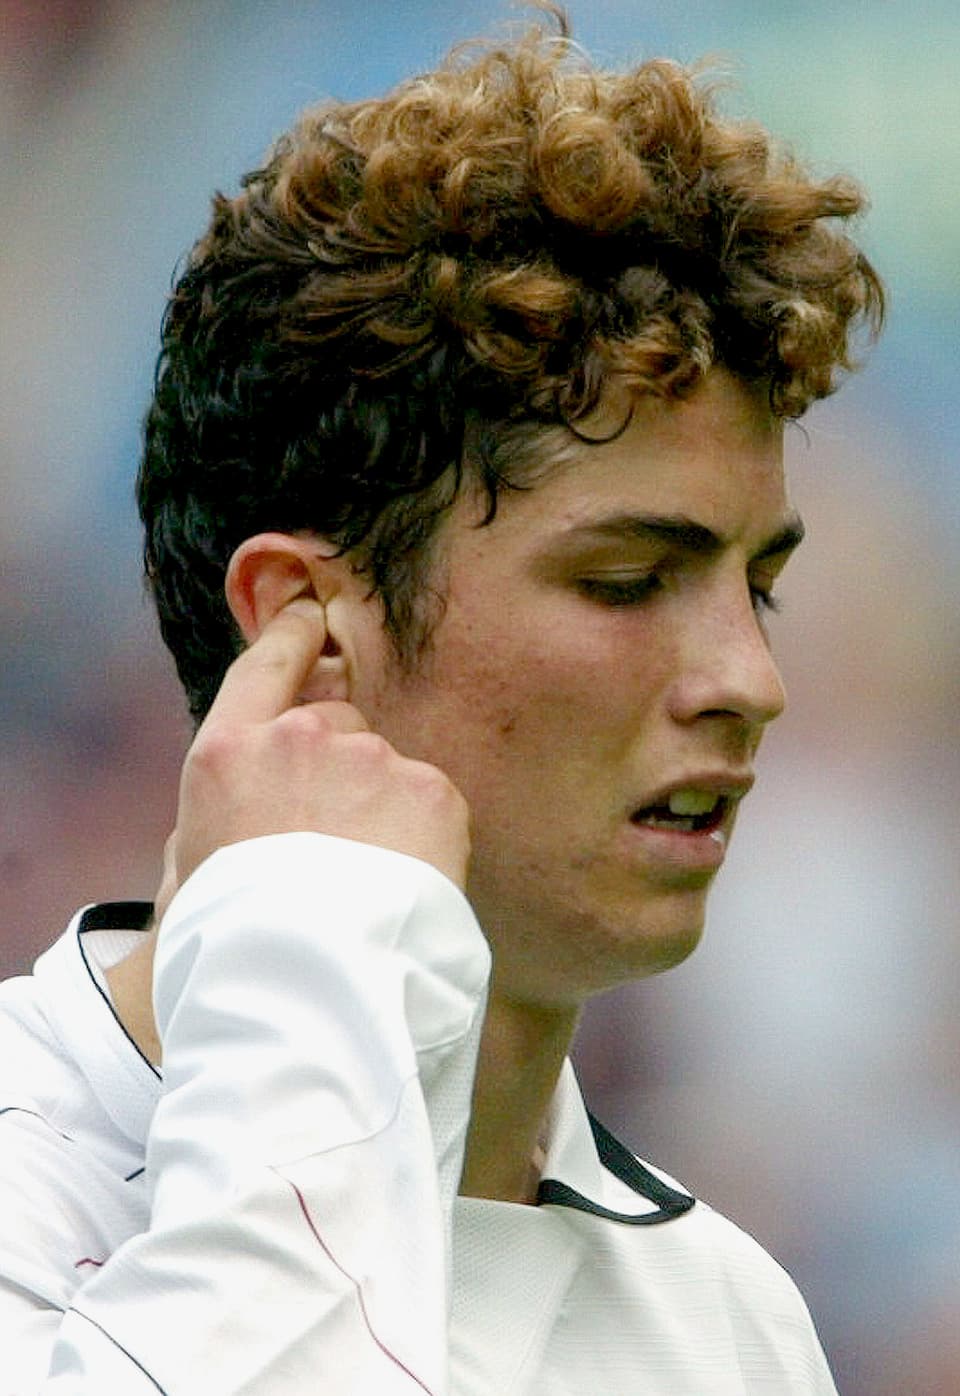 Cristiano Ronaldo mit Schaf Frisur